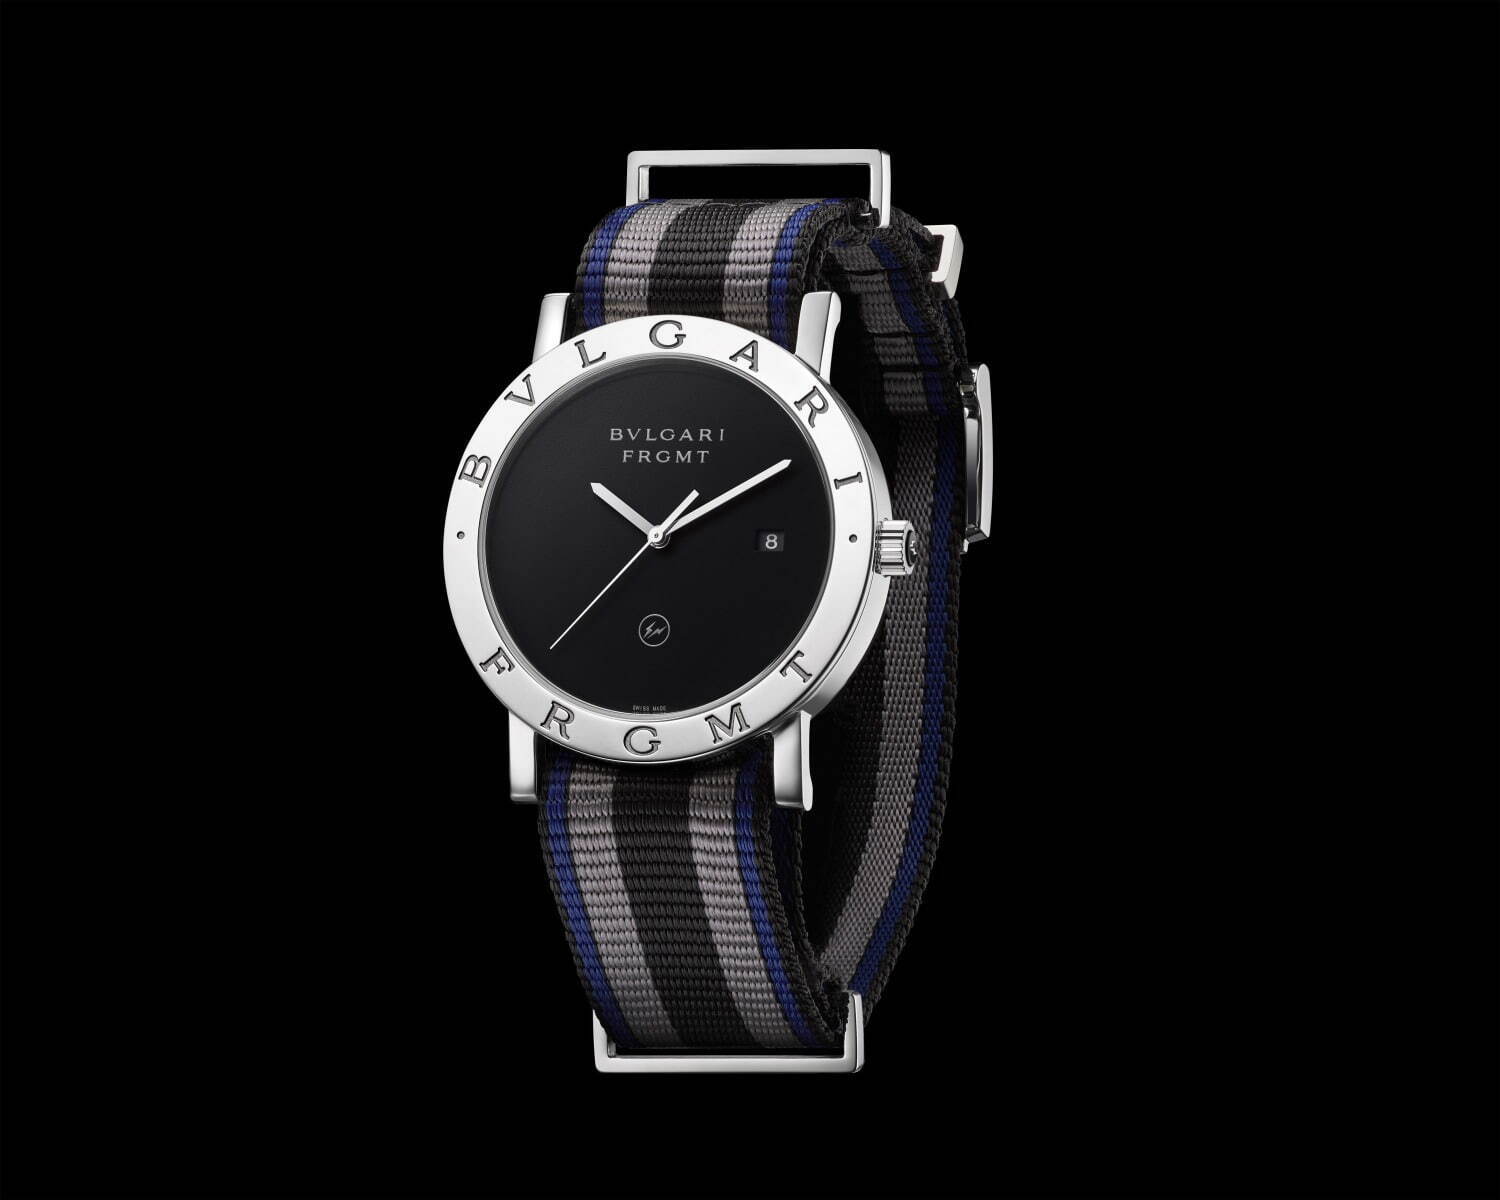 ブルガリ×藤原ヒロシ率いるフラグメント デザインの腕時計第2弾 